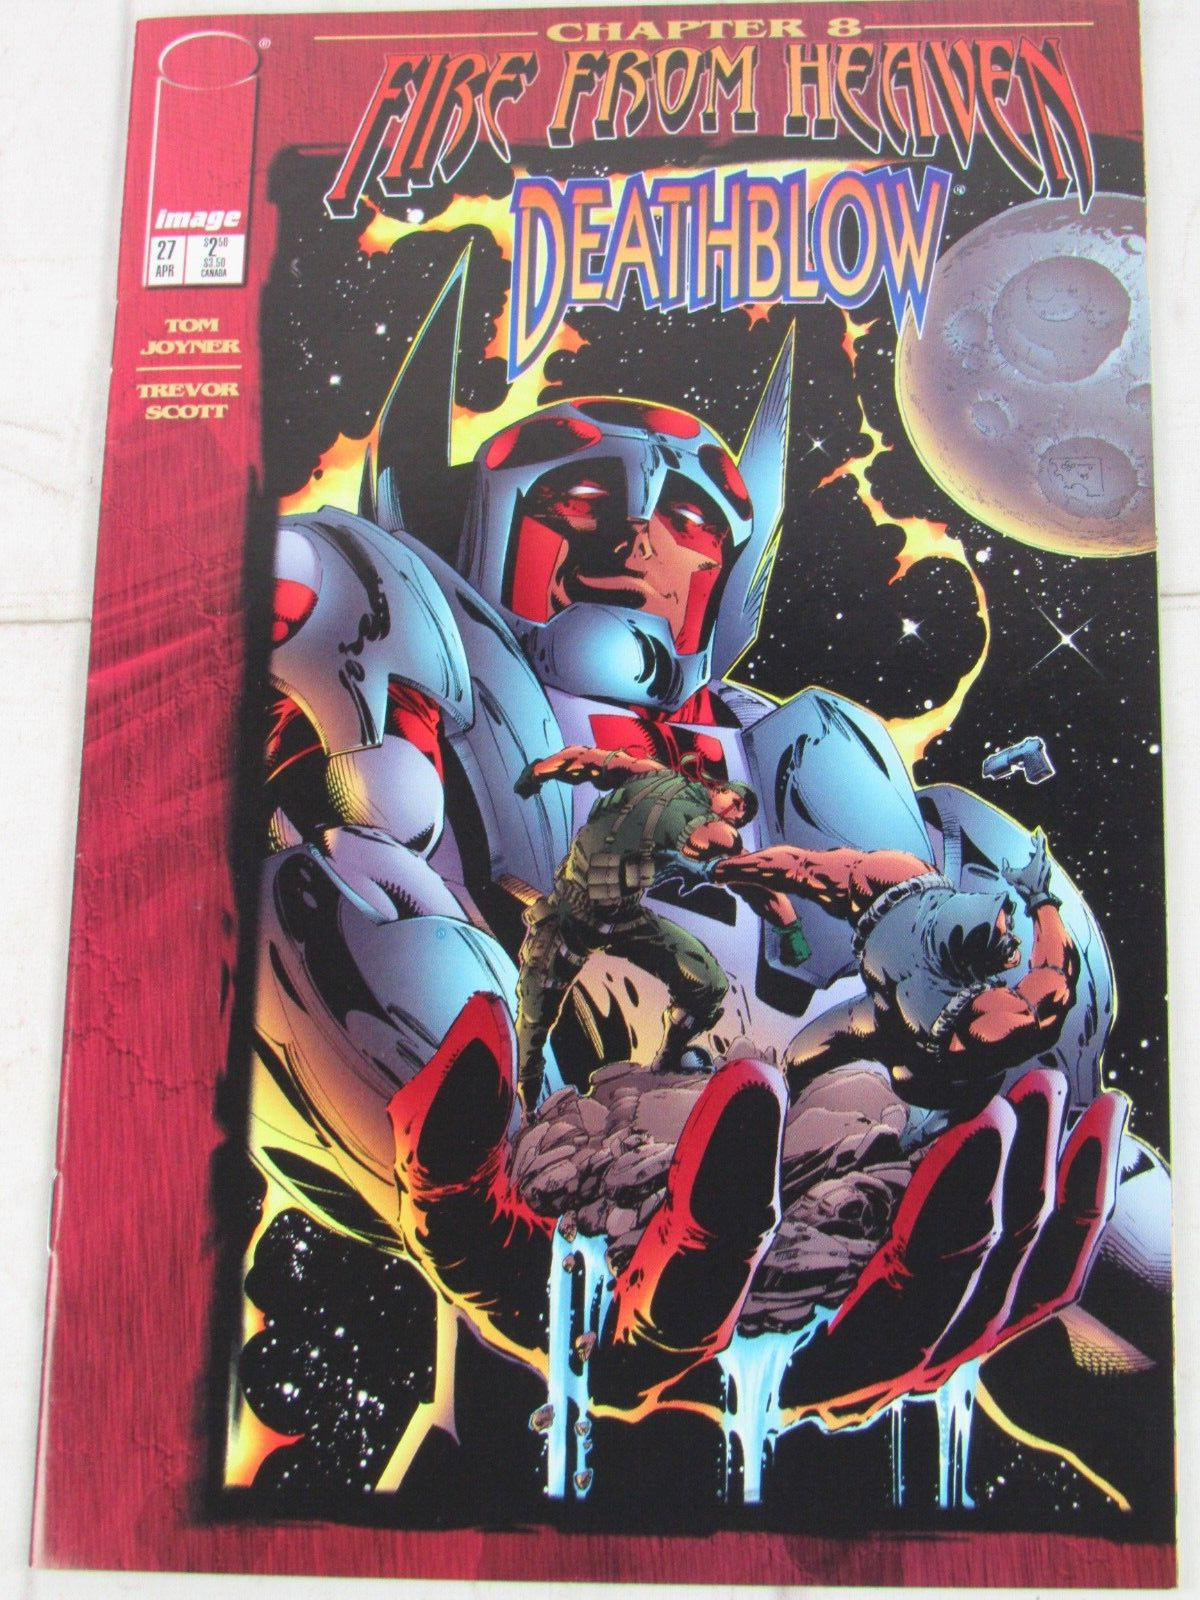 Deathblow #27 Apr. 1996 Image Comics